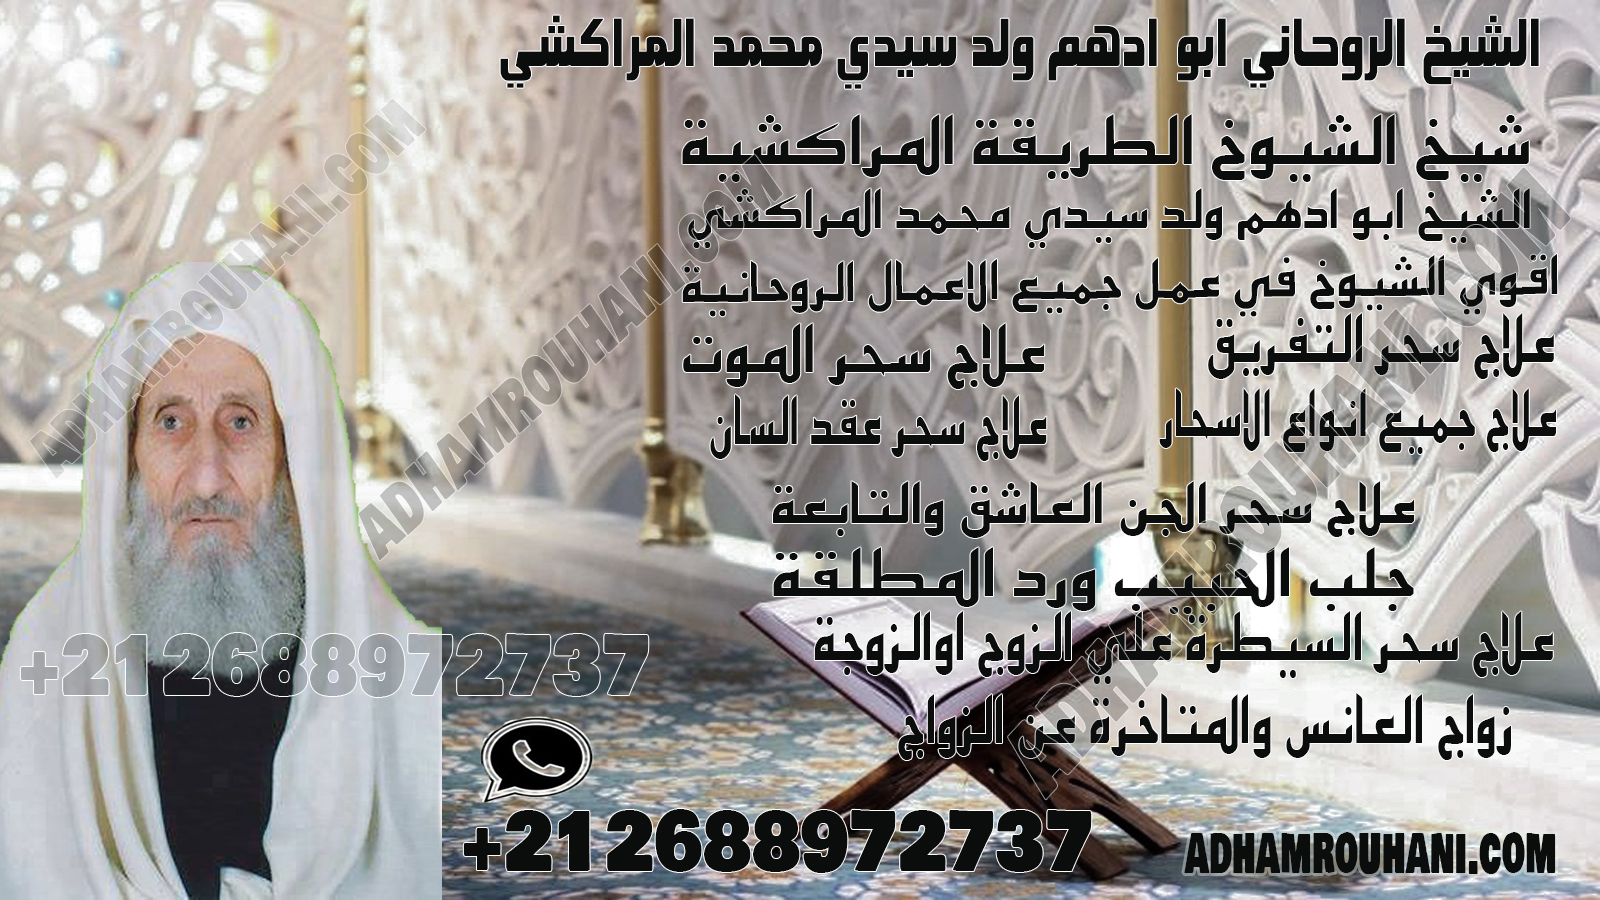 الشيخ الروحاني ابو ادهم ولد سيدي محمد المراكشي.jpg